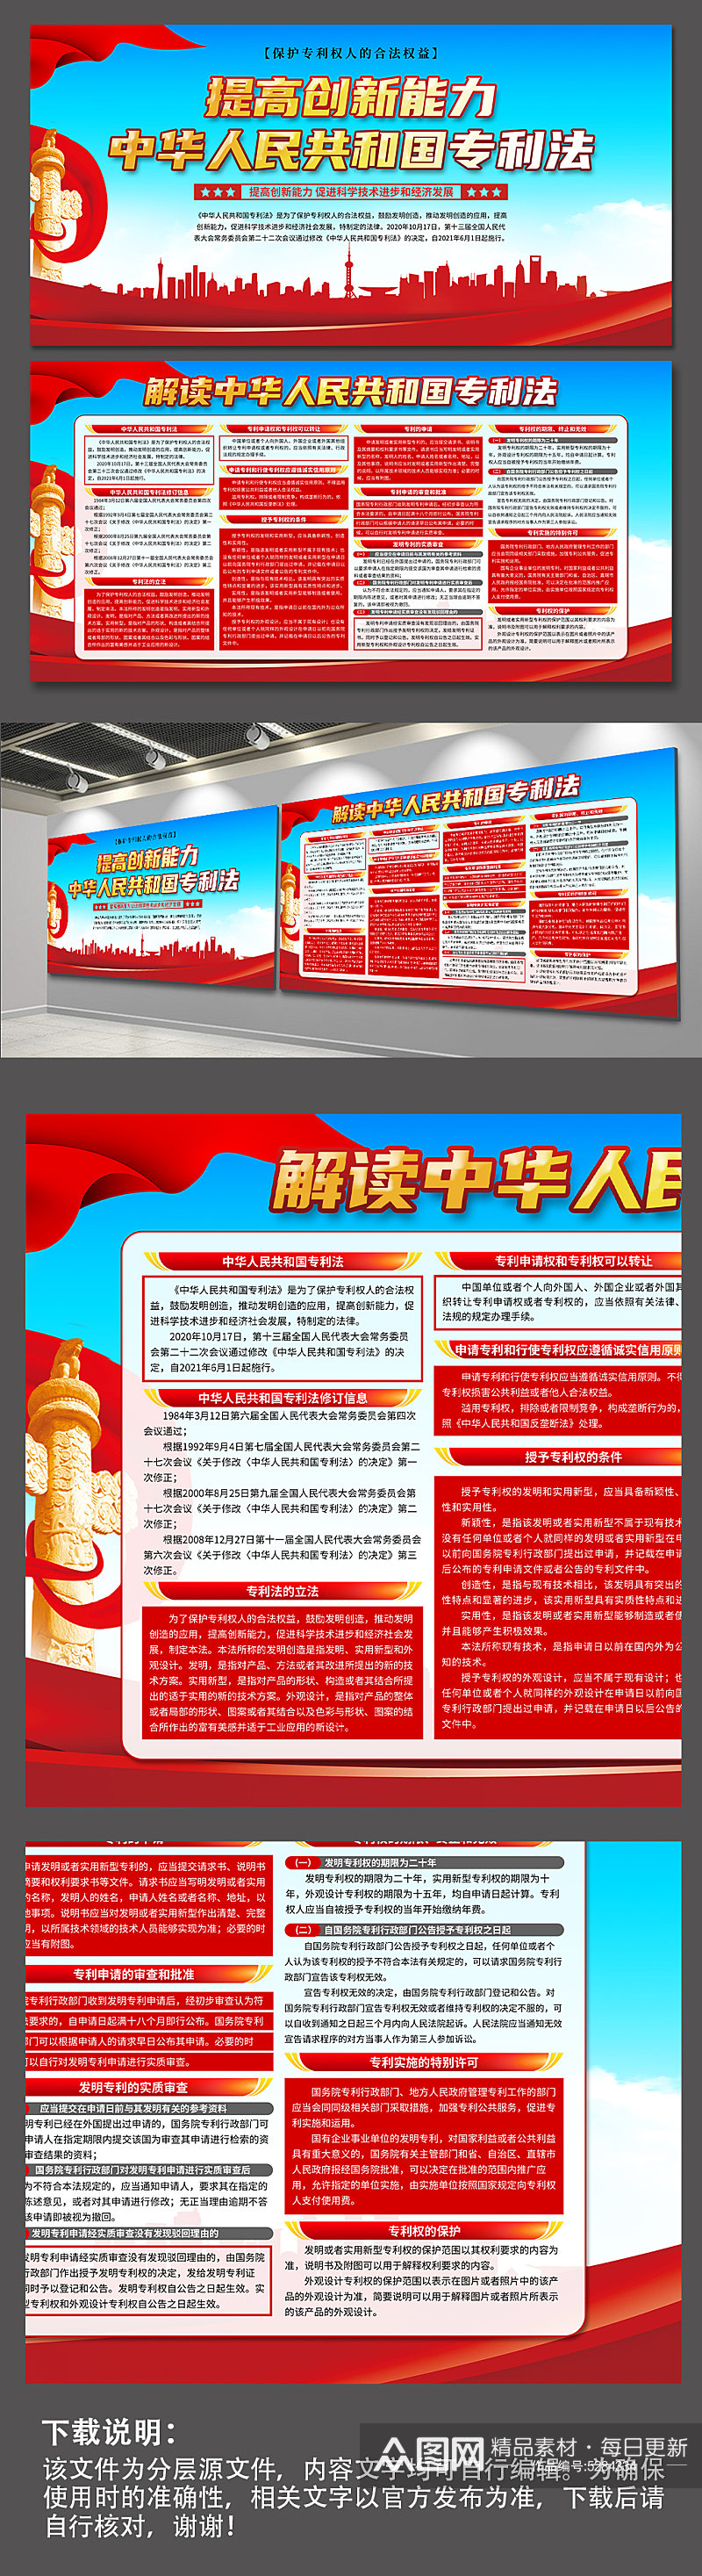 蓝色中华人民共和国专利法展板素材